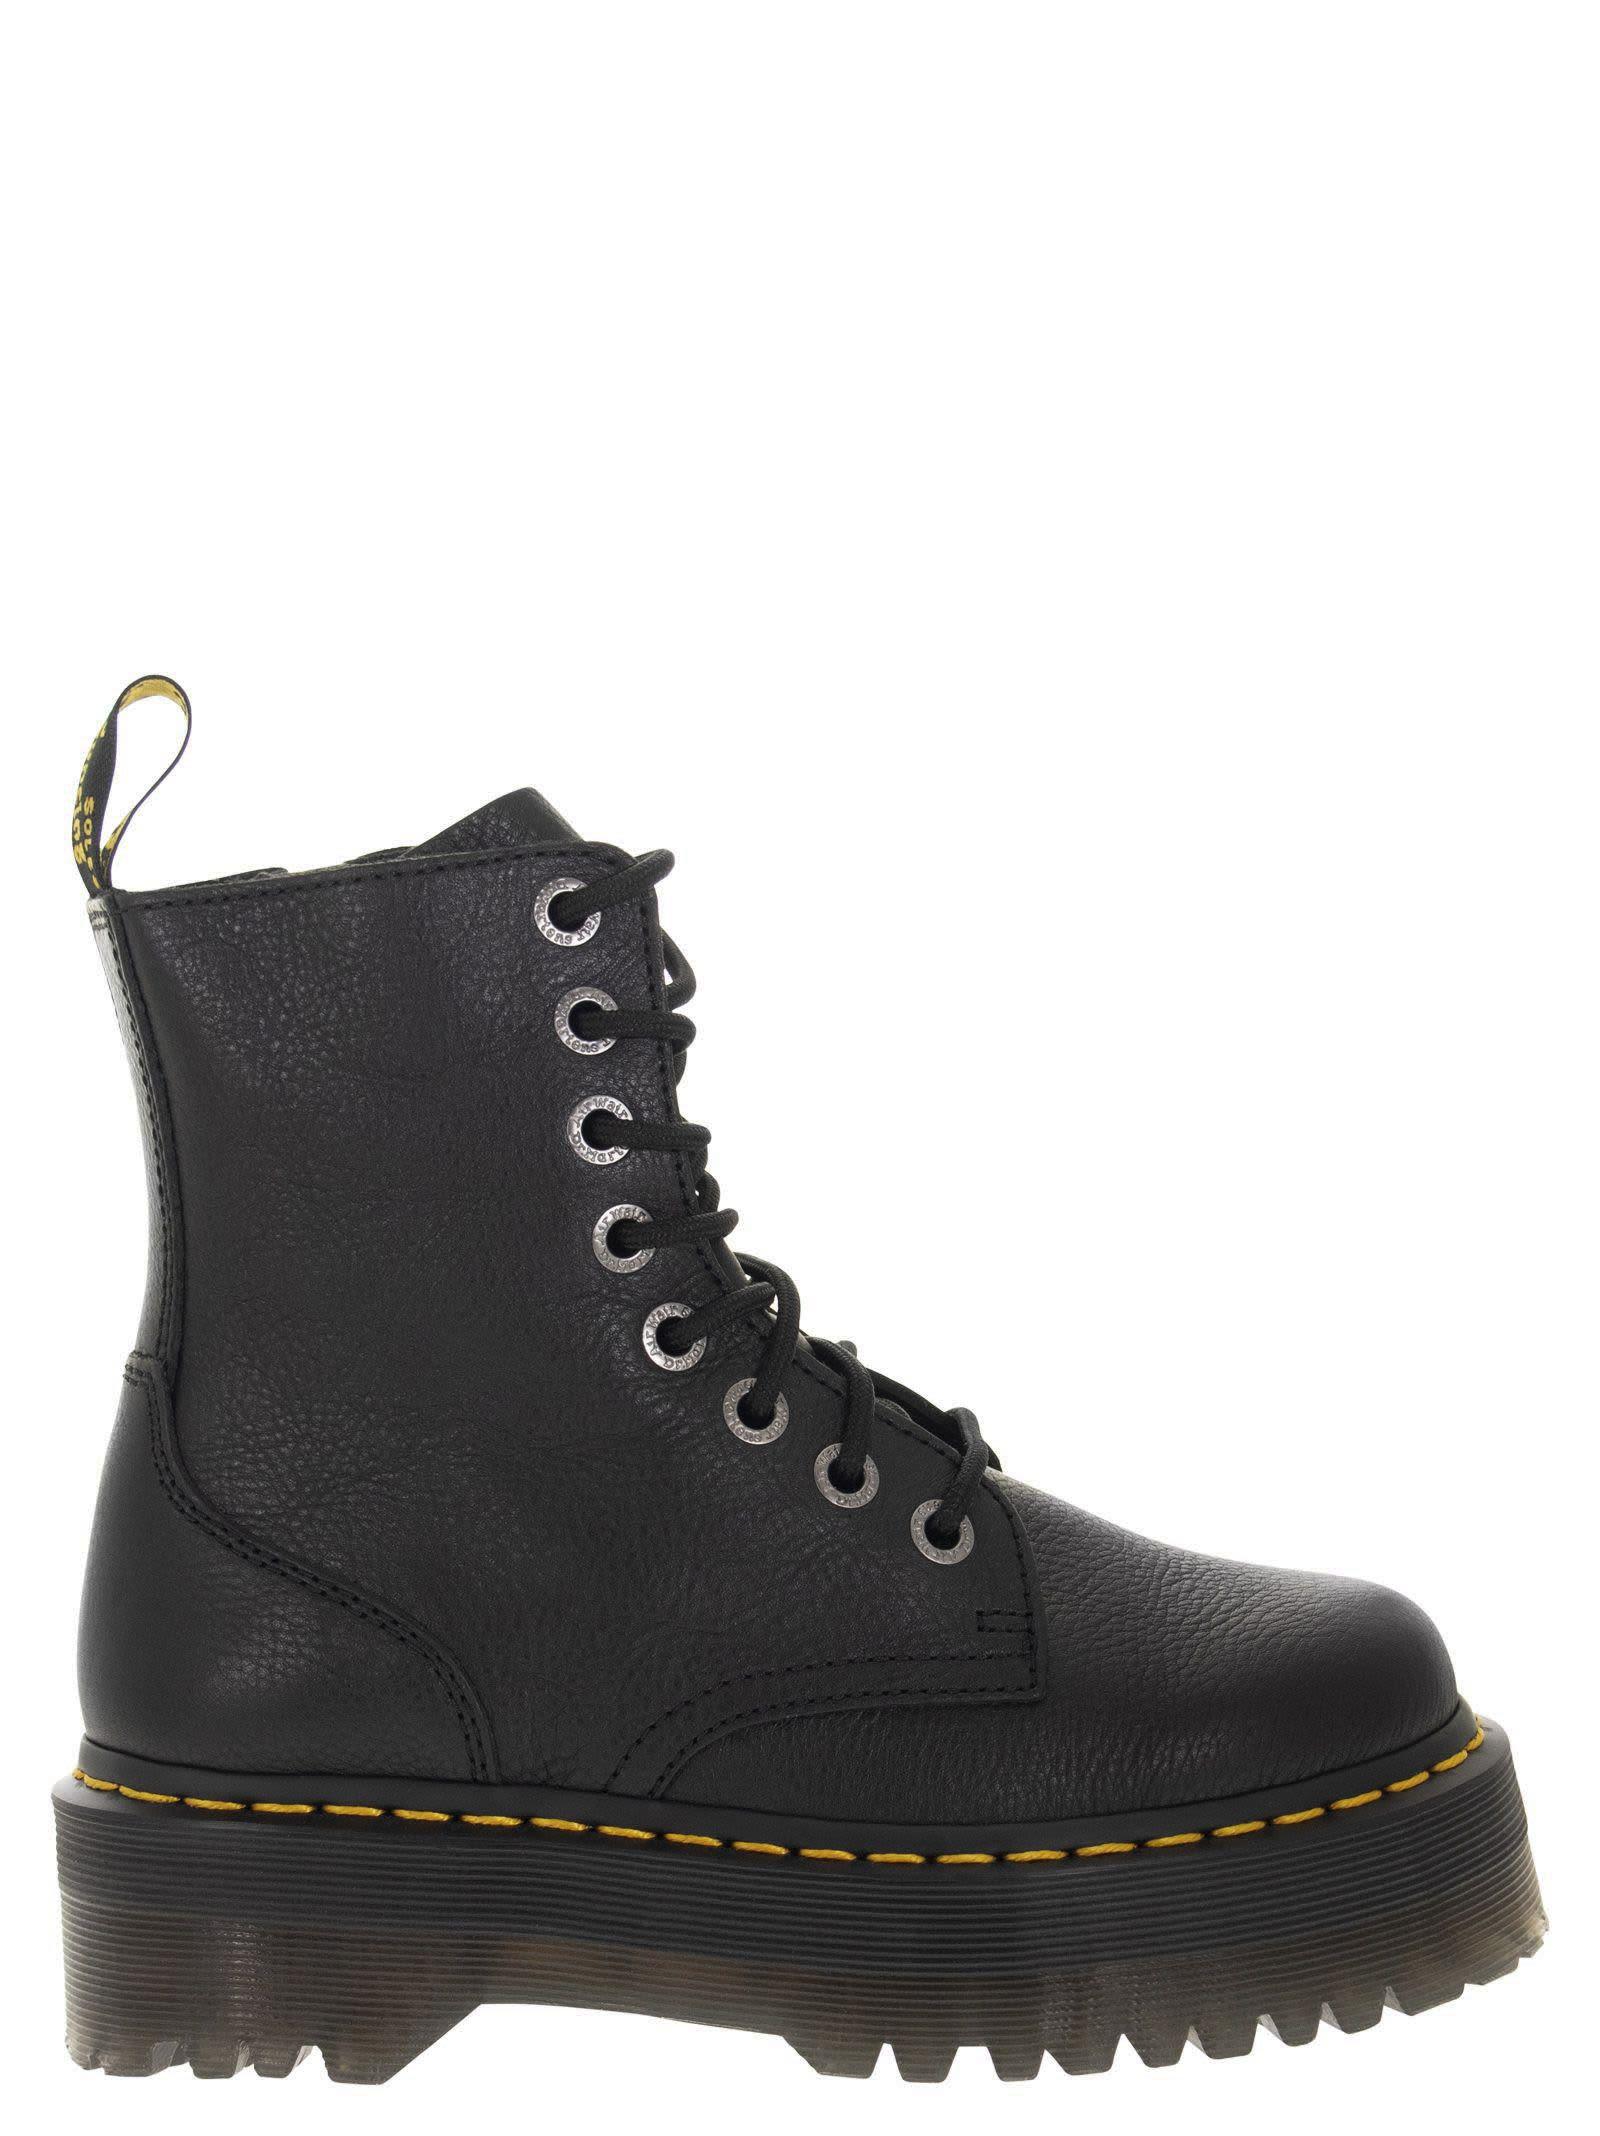 Dr. Martens Jadon Pisa - Leather Platform Boots in Black | Lyst